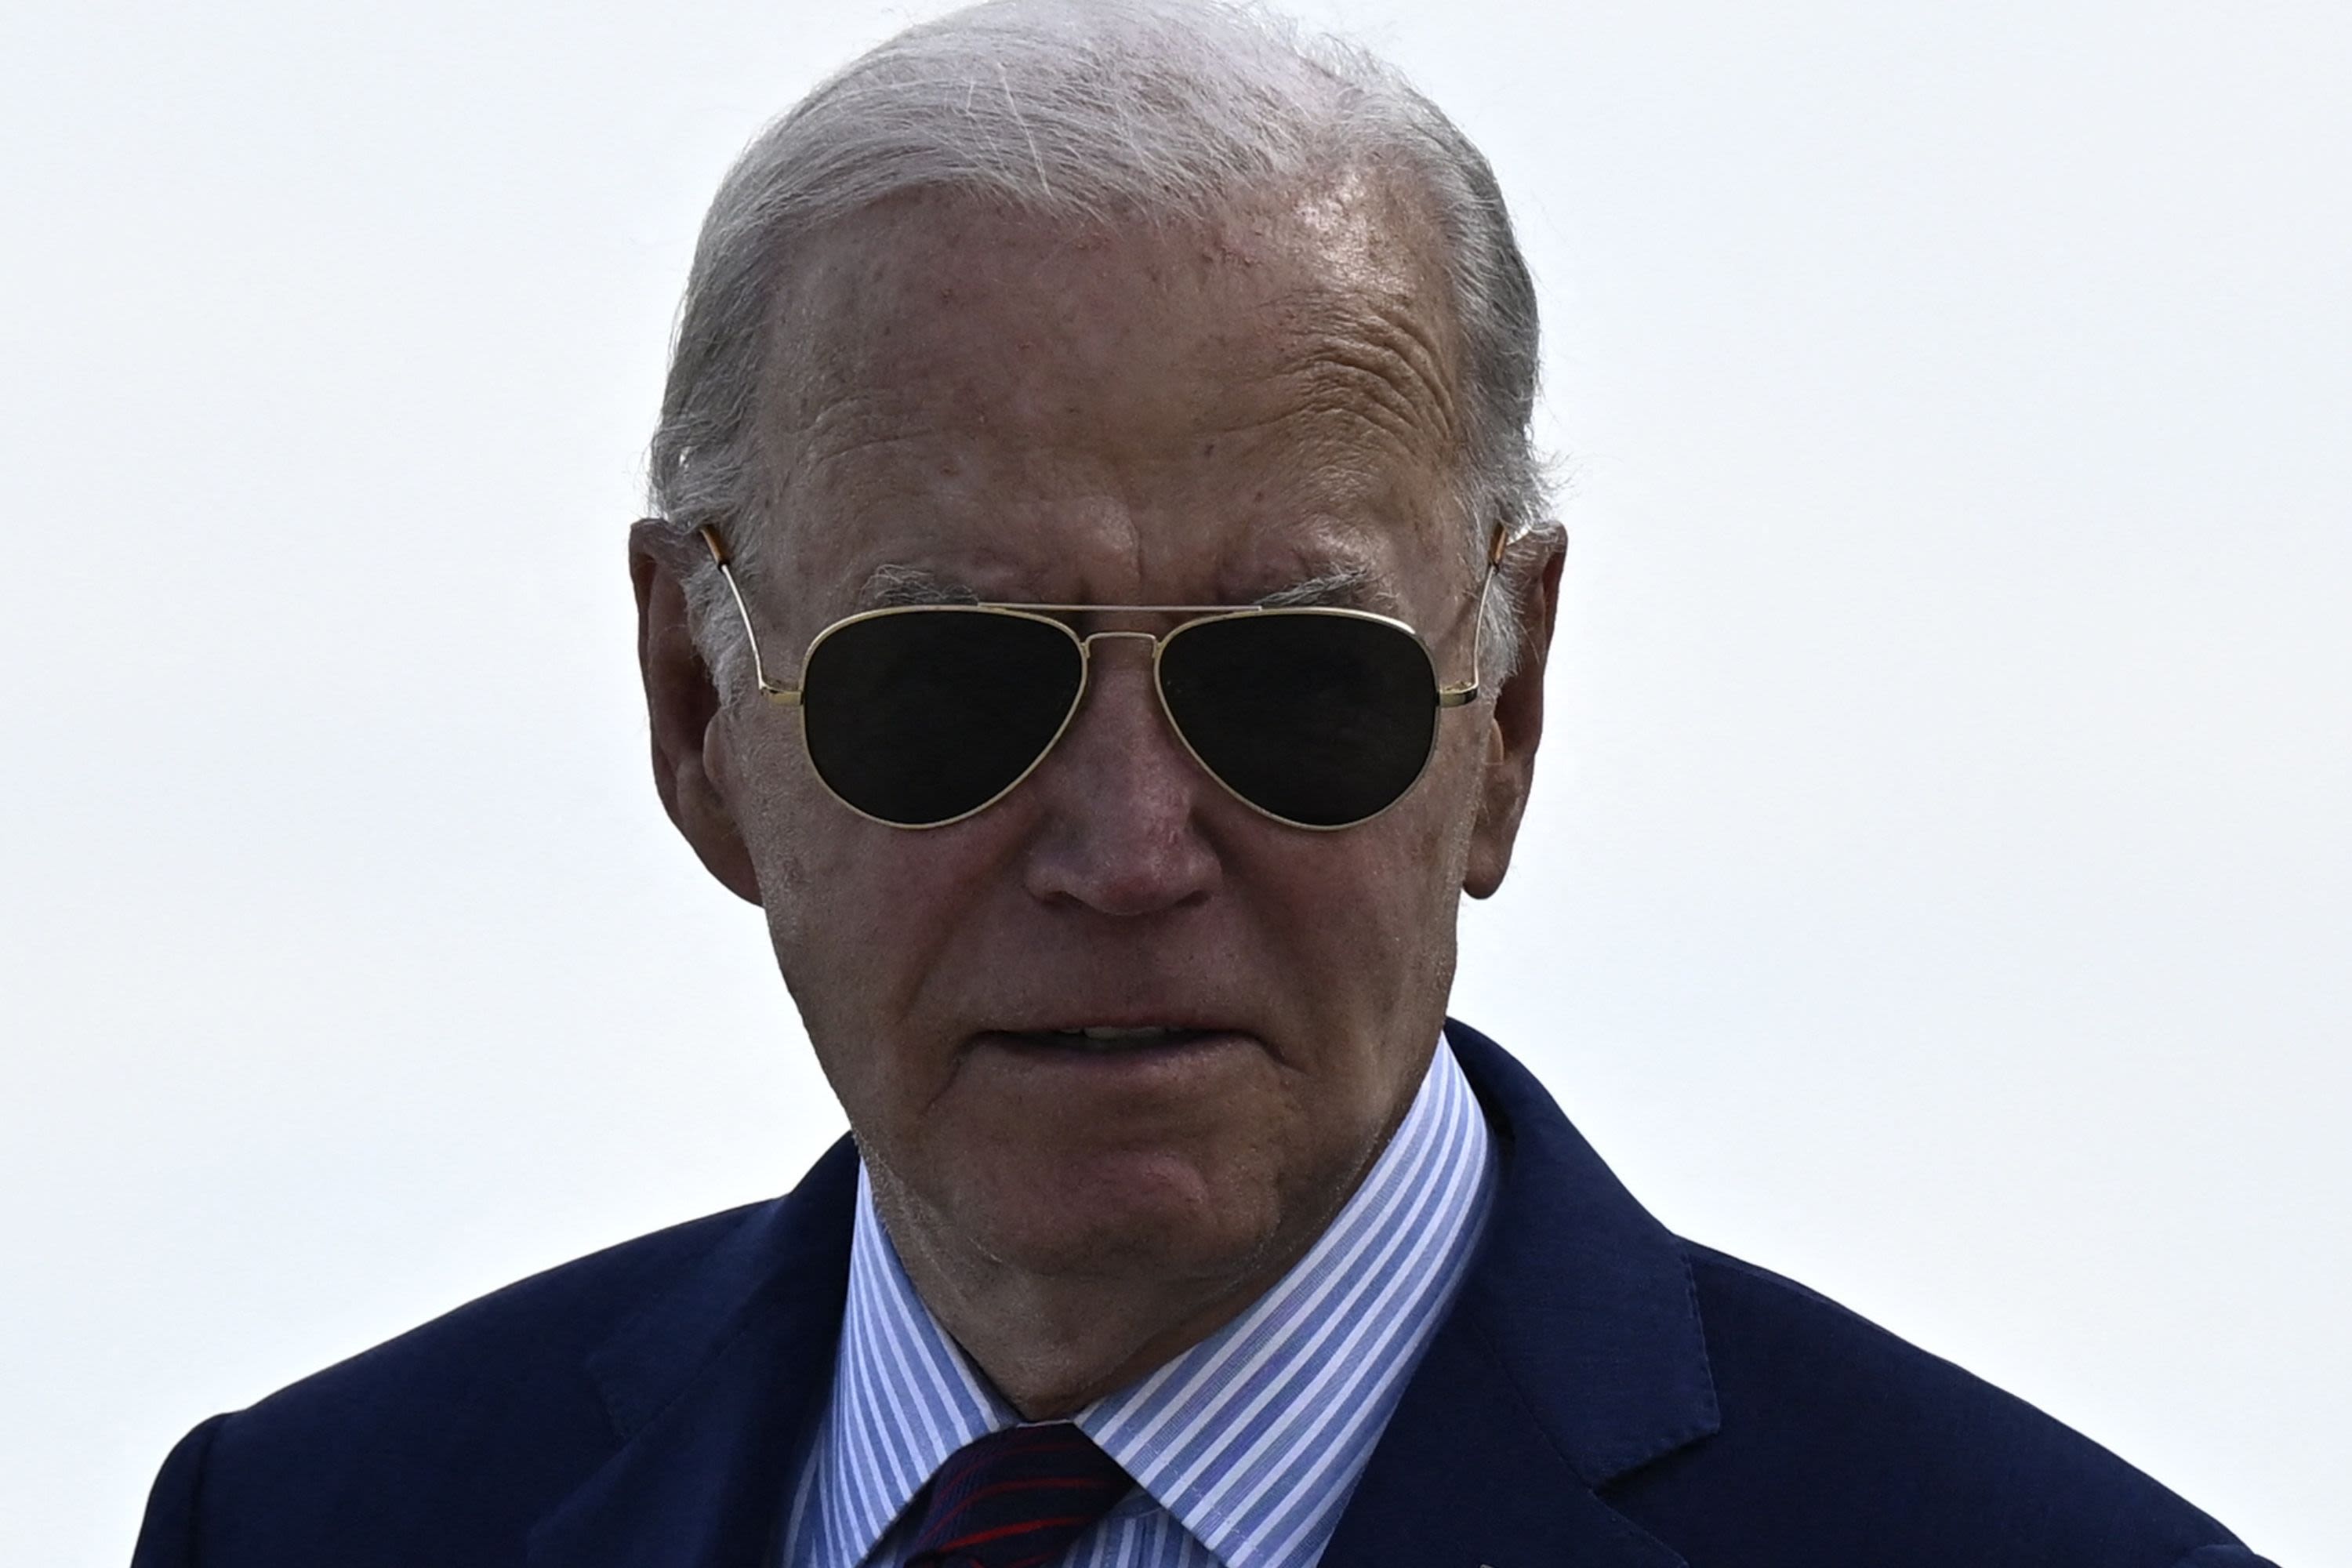 Joe Biden's gaffe-filled interview raises eyebrows